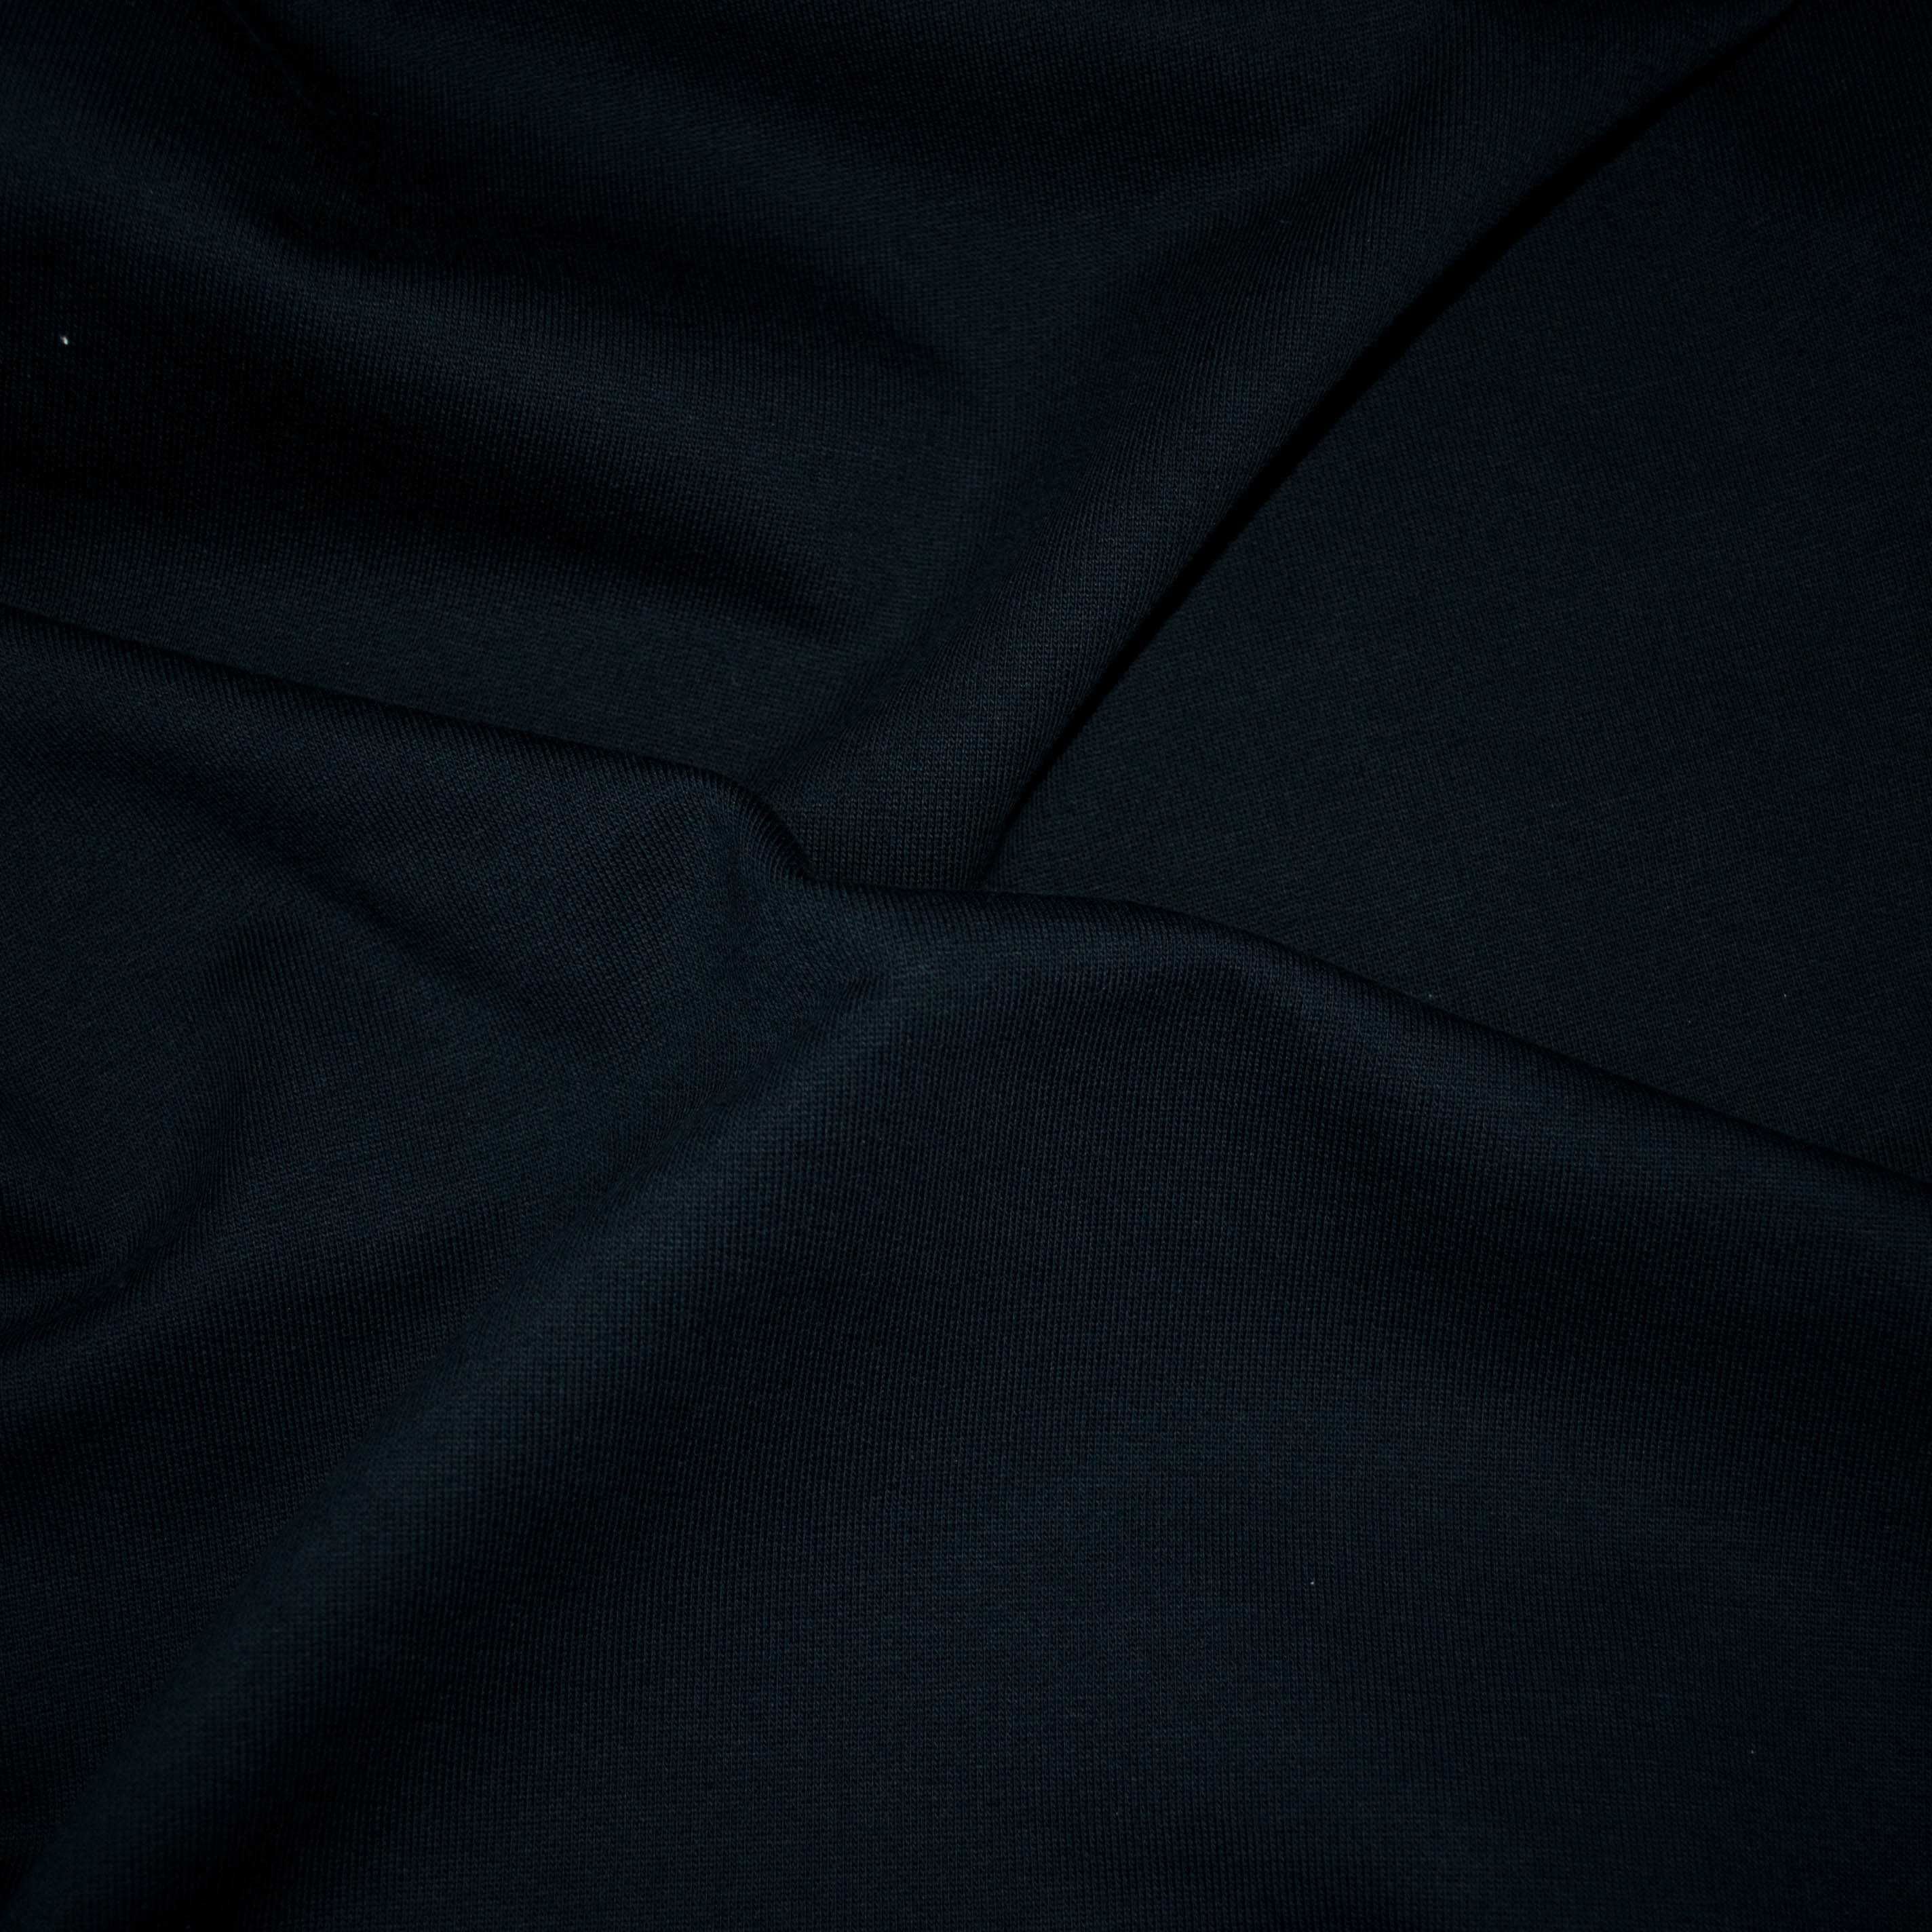 Италианско черно стегнато трико. 100% памук. Отлично качество..